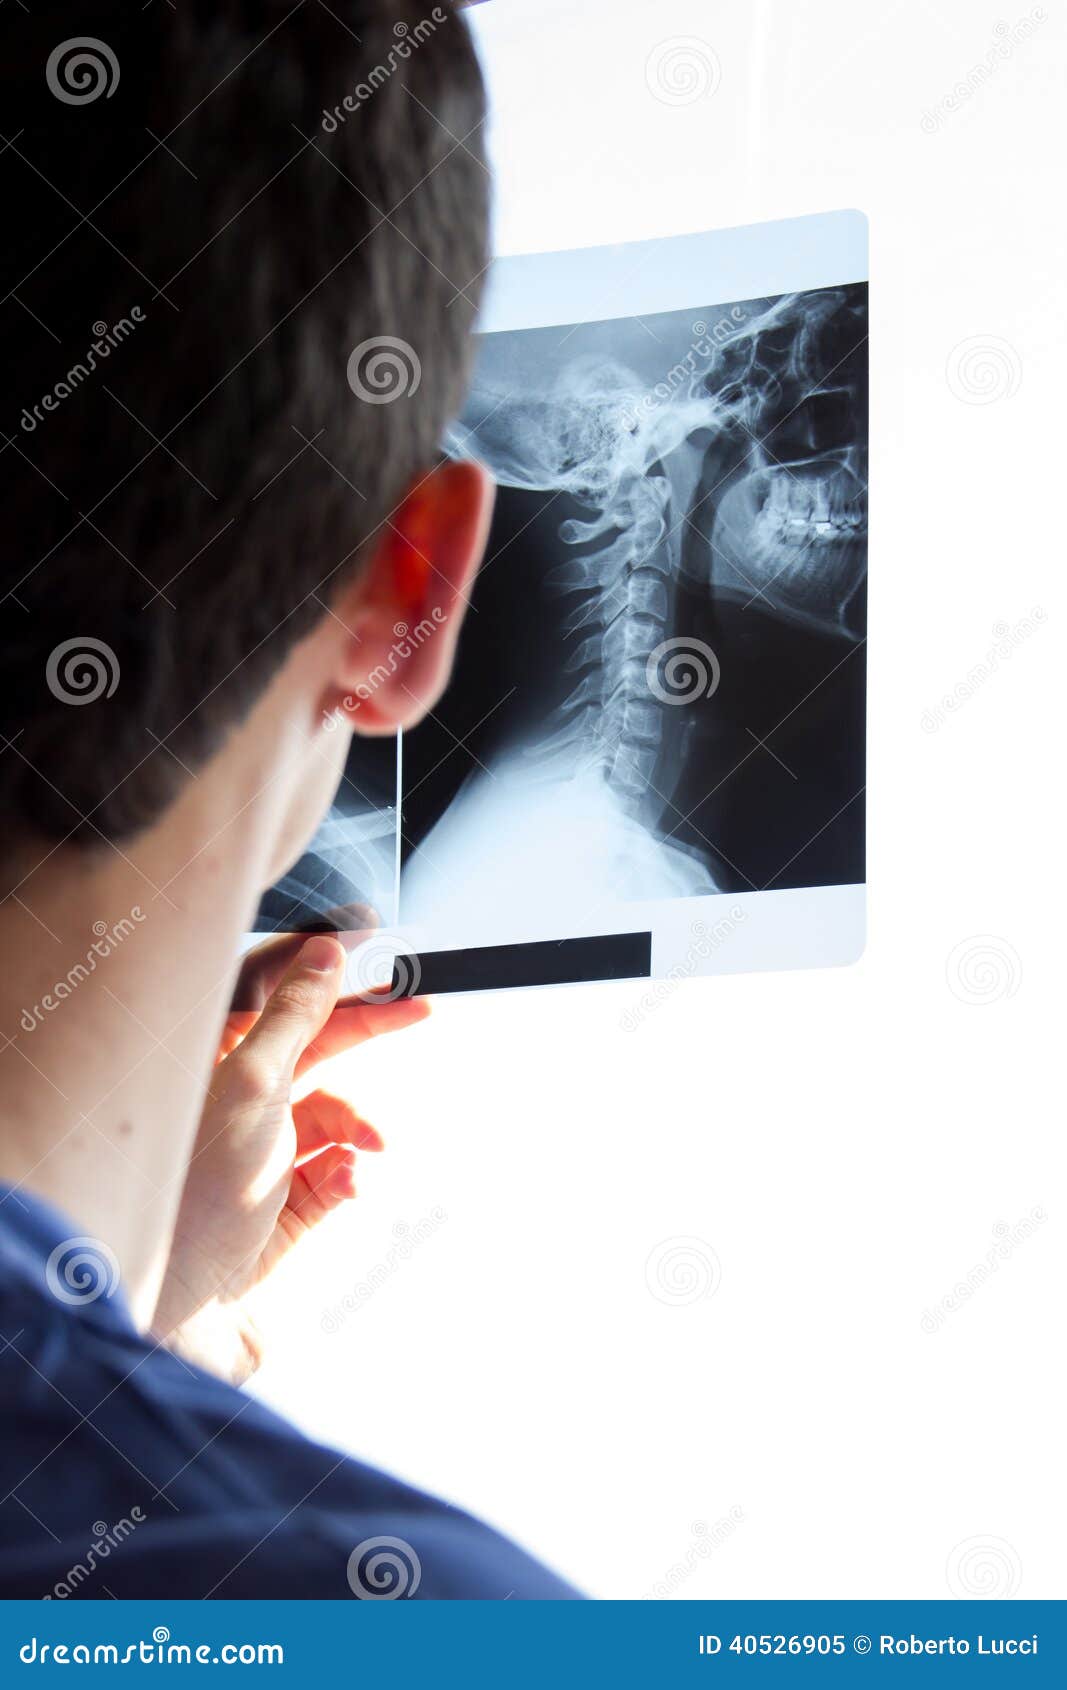 guy watching neck radiogram